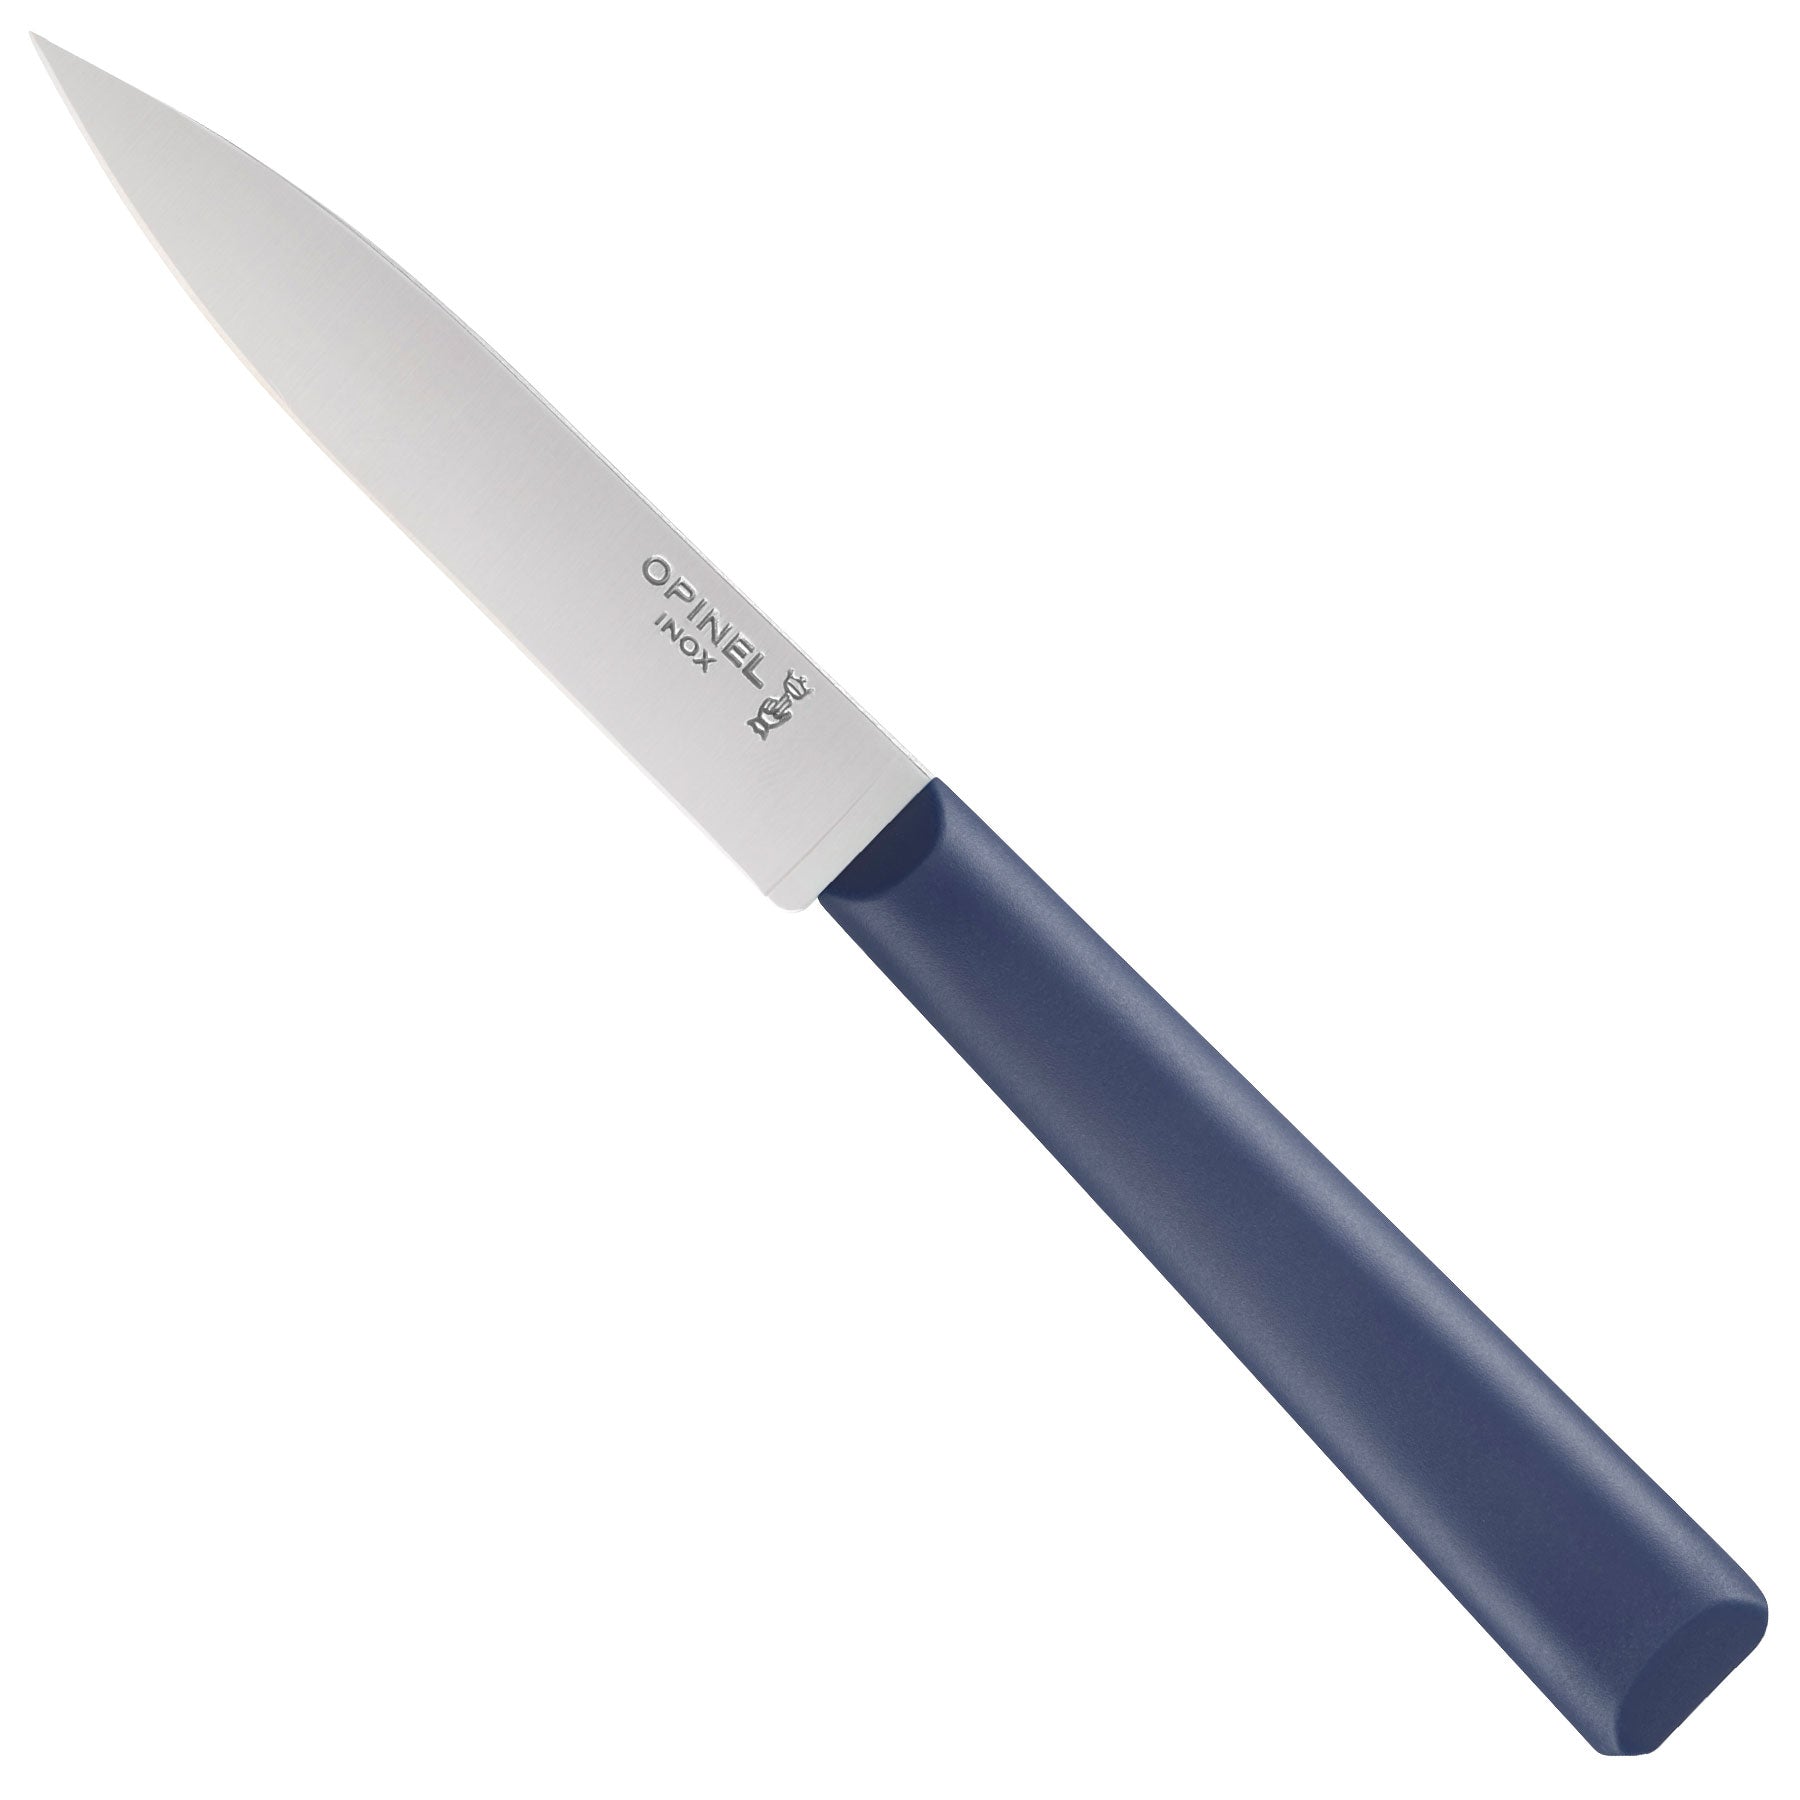 Opinel Les Essentiels Du Cuisinier 002576, 4-piece peeling knife